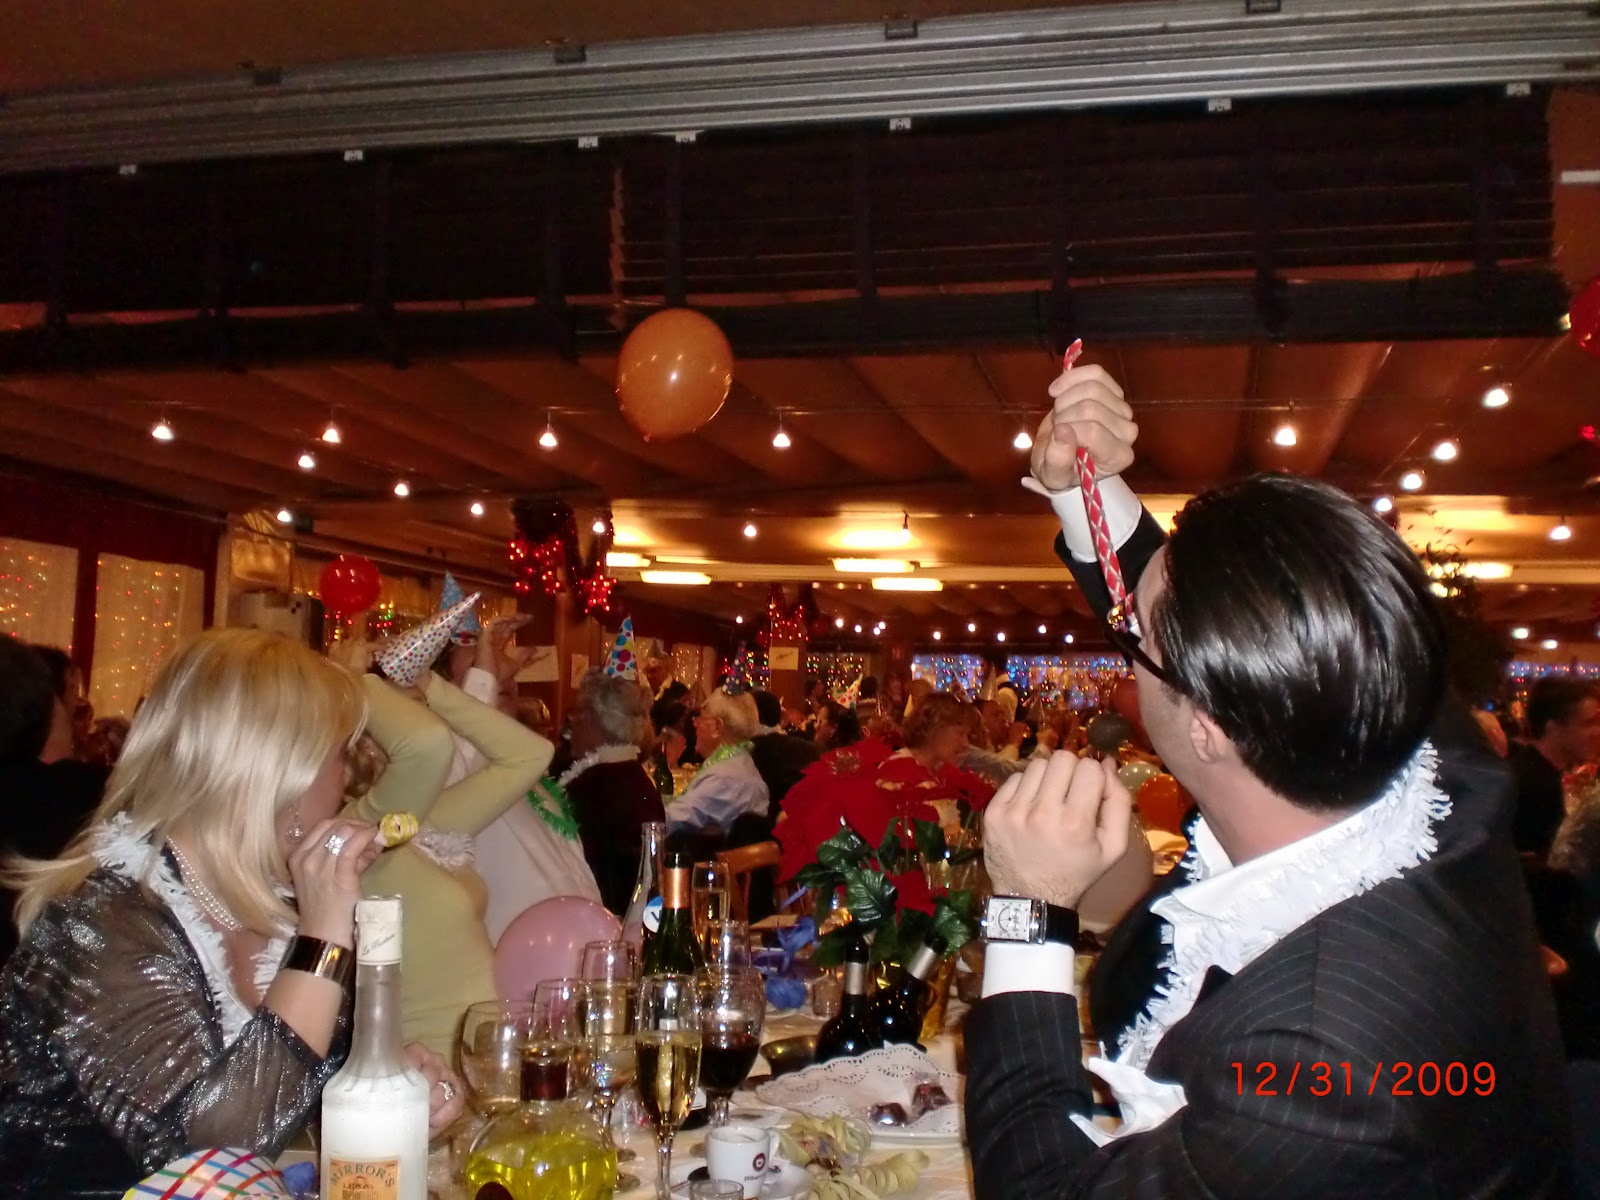 http://4.bp.blogspot.com/-TN9rZVZGUBs/T1l7ioLNOoI/AAAAAAAAAzs/SoHjrXklGRw/s1600/A+restaurant+at+Port+Ol%C3%ADmpic+on+New+Year%27s+Eve.jpg